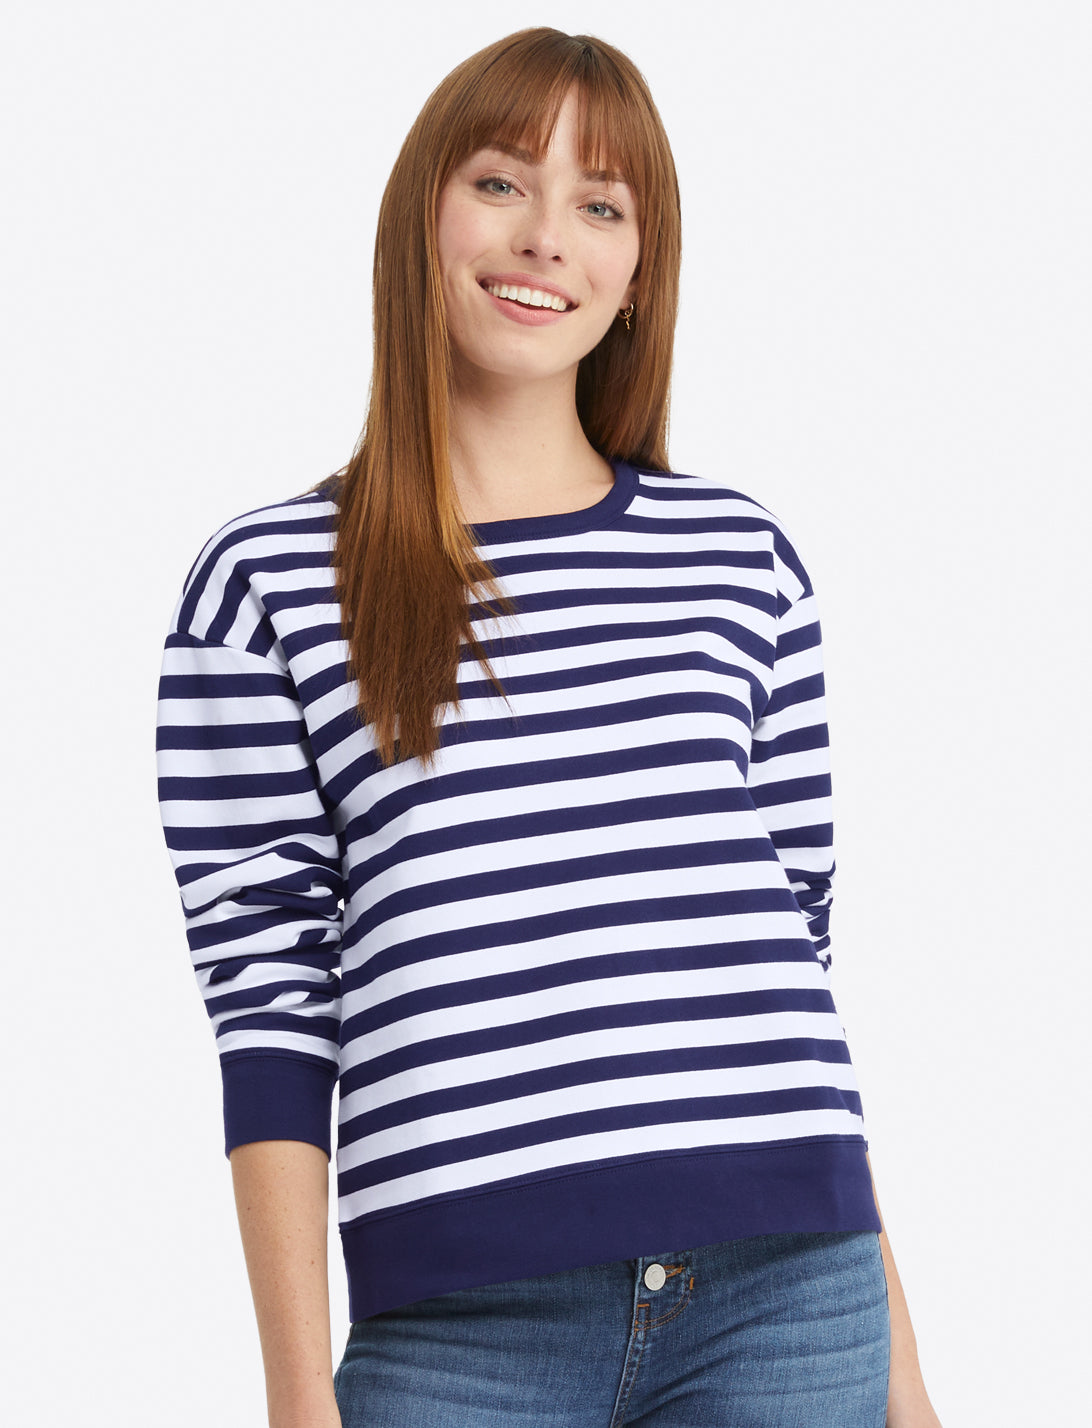 Kelsea Sweatshirt in Awning Stripe